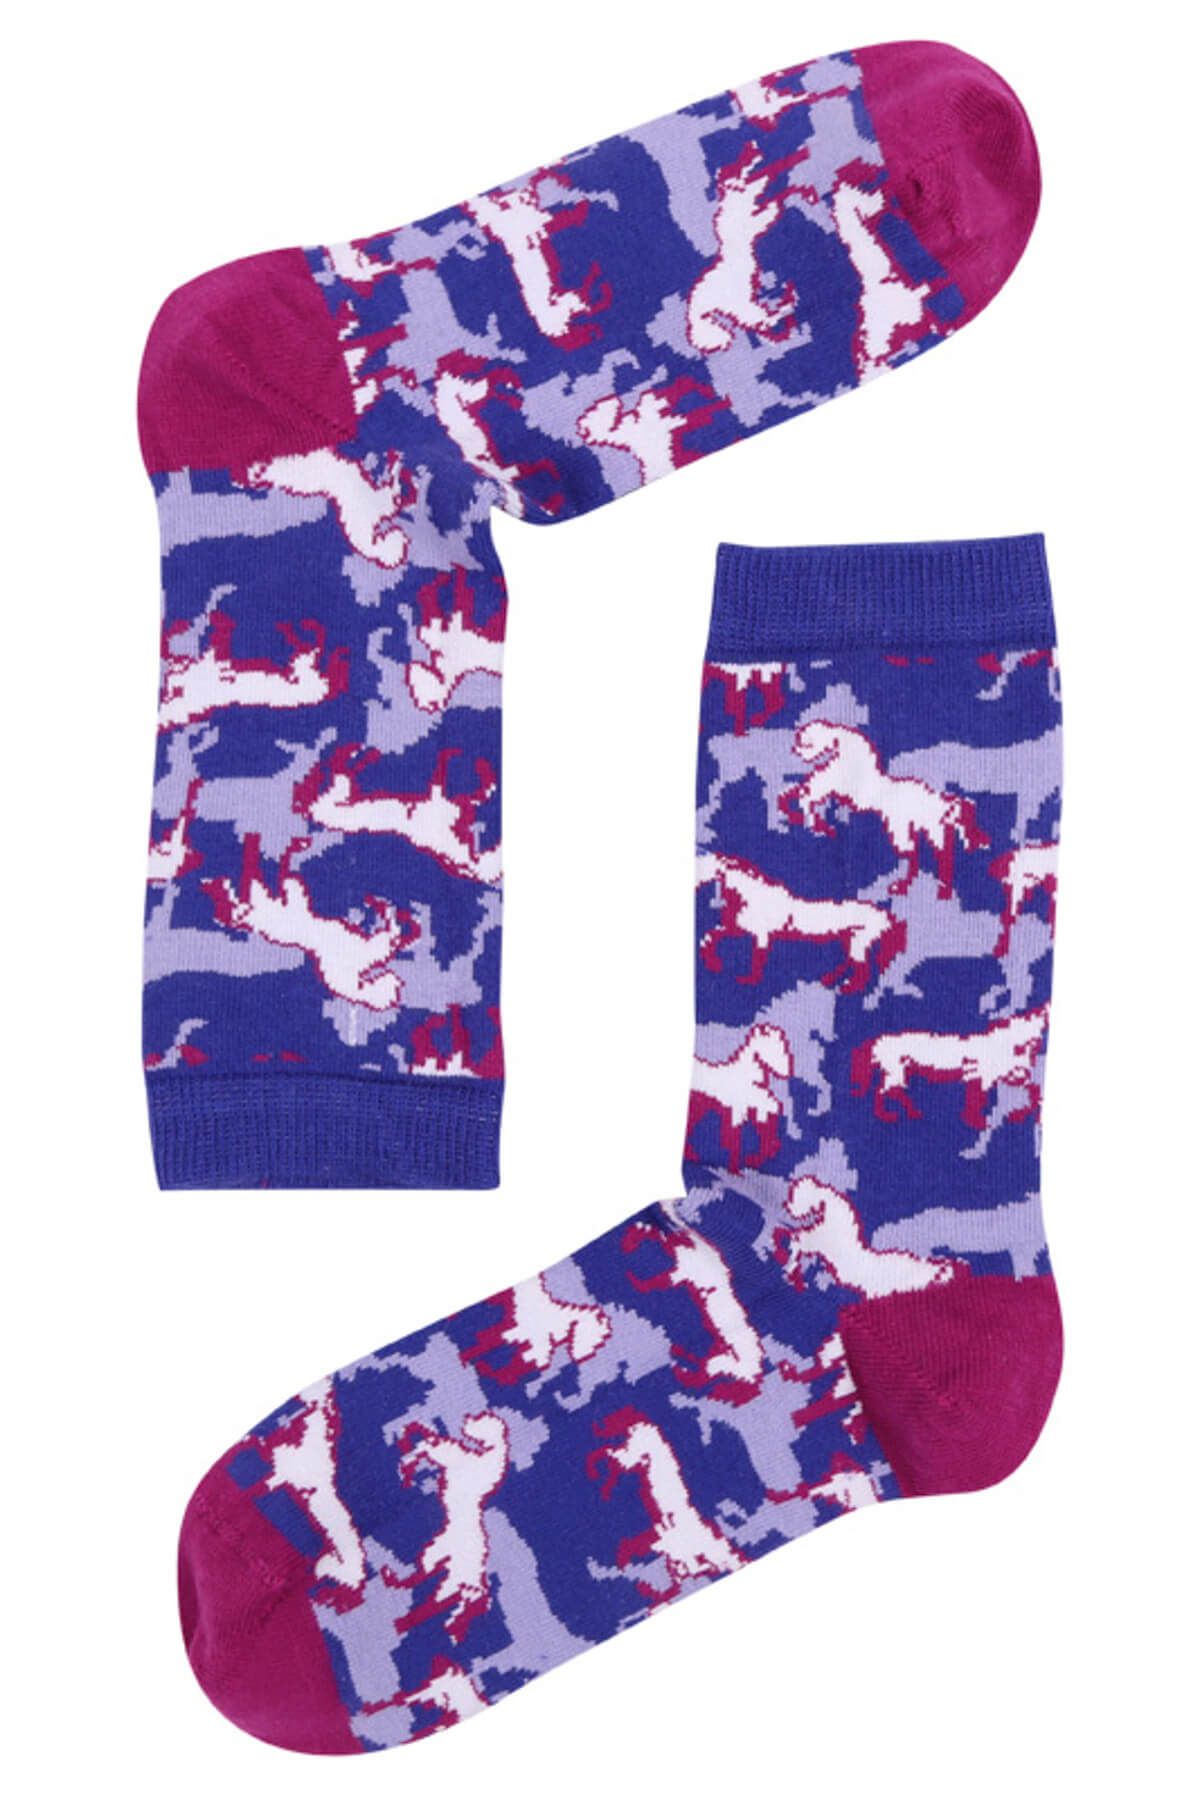 The Socks Company Kadın Çok Renkli Horses Rush Desenli Çorap